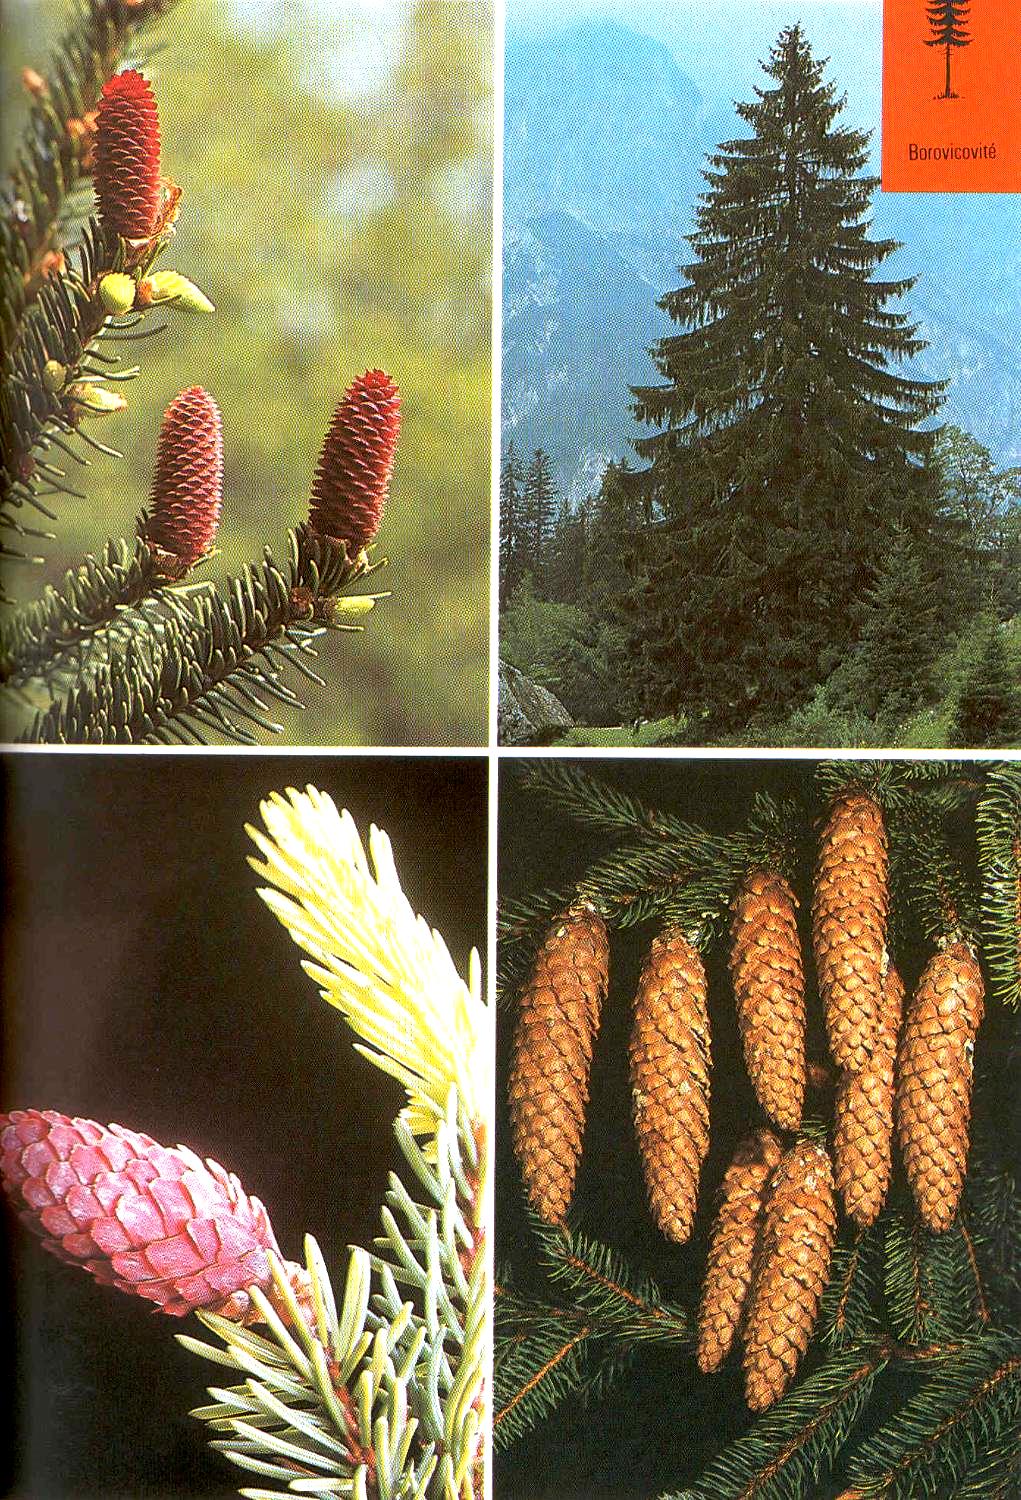 Smrk ztepilý Picea abies Výška 30-50 (70) m nejvyšší strom Evropy. Jehlice všestranné, šišky padají na zem, kůra šedo-červeno-hnědá. Mělké kořeny, nesnáší sucho, teplo, živné půdy (!), imise.